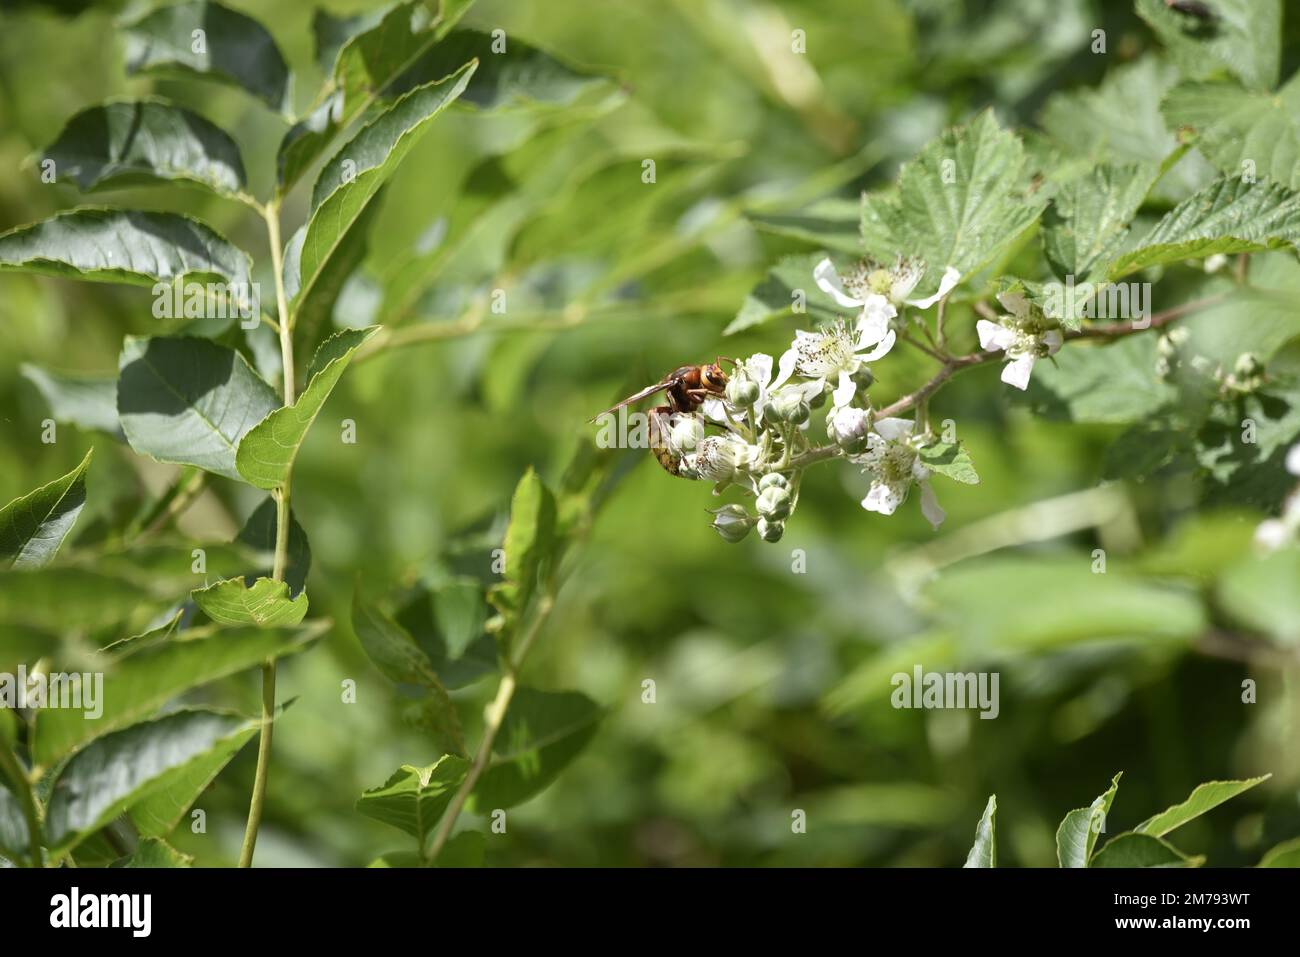 Hornet européen (Vespa crabro) en profil droit, au milieu de l'image, sur une fleur sauvage blanche lors d'une journée ensoleillée contre un fond vert à feuilles vertes au pays de Galles, au Royaume-Uni Banque D'Images